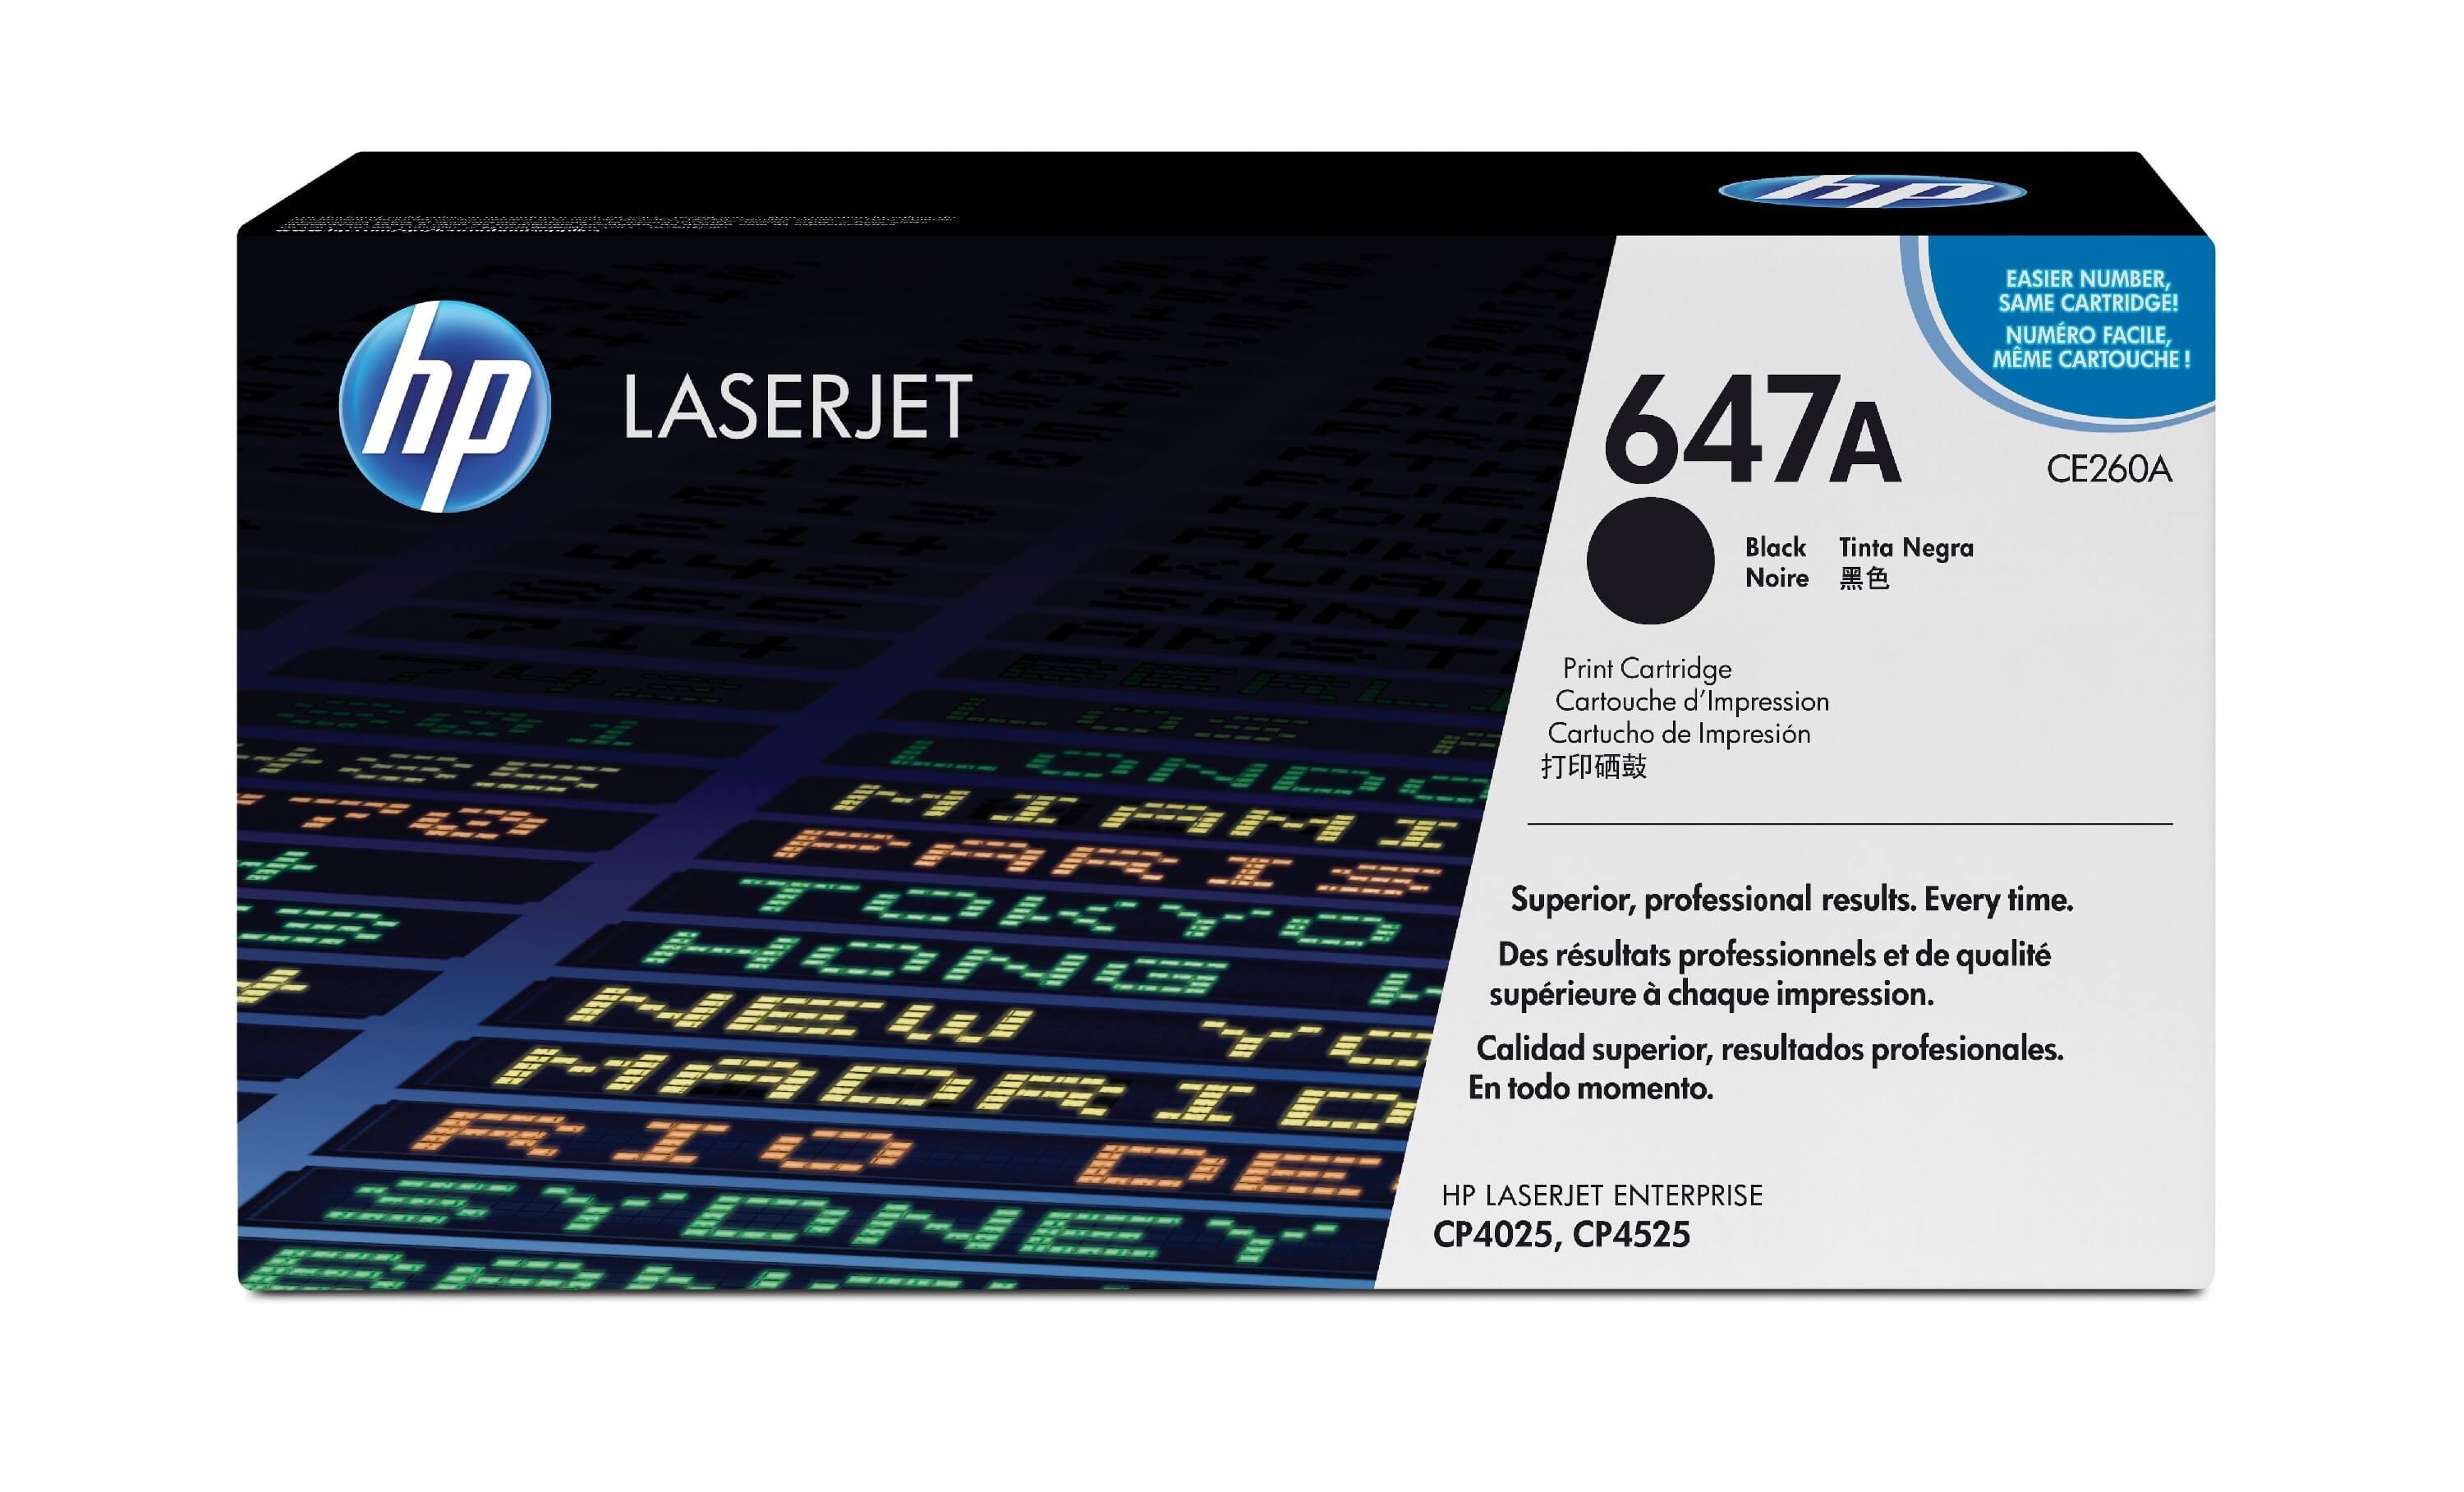 Original Toner HP Color LaserJet Enterprise CP 4525 n (CE260A / 647A) Schwarz